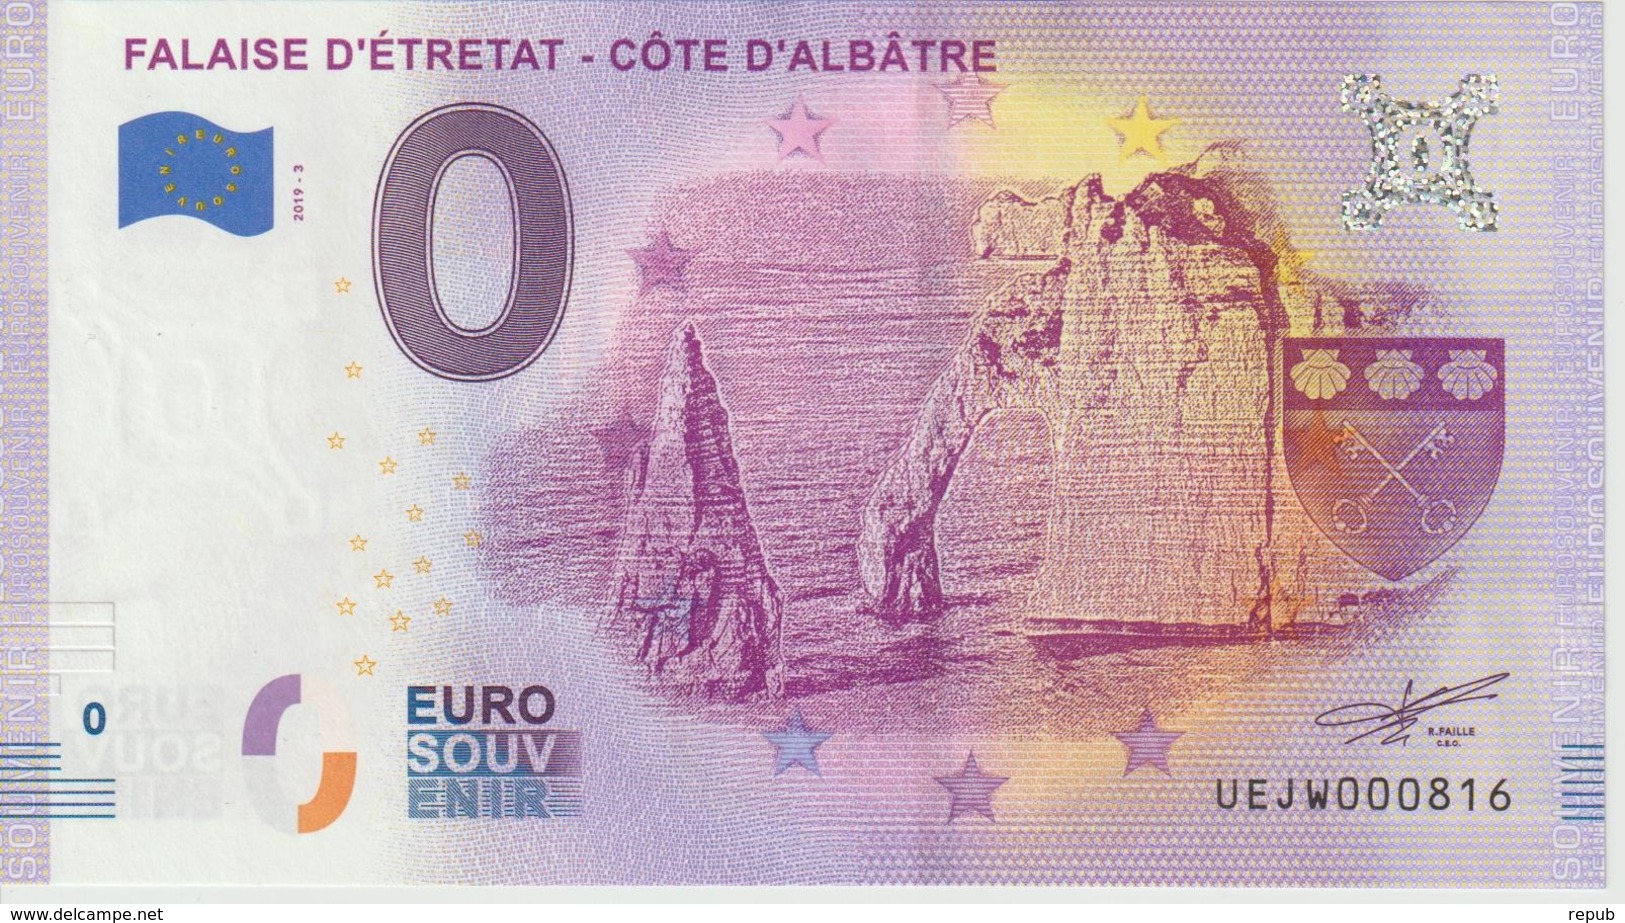 Billet Touristique 0 Euro Souvenir France 76 Falaise D'Etretat 2019-3 N°UEJW000816 - Essais Privés / Non-officiels